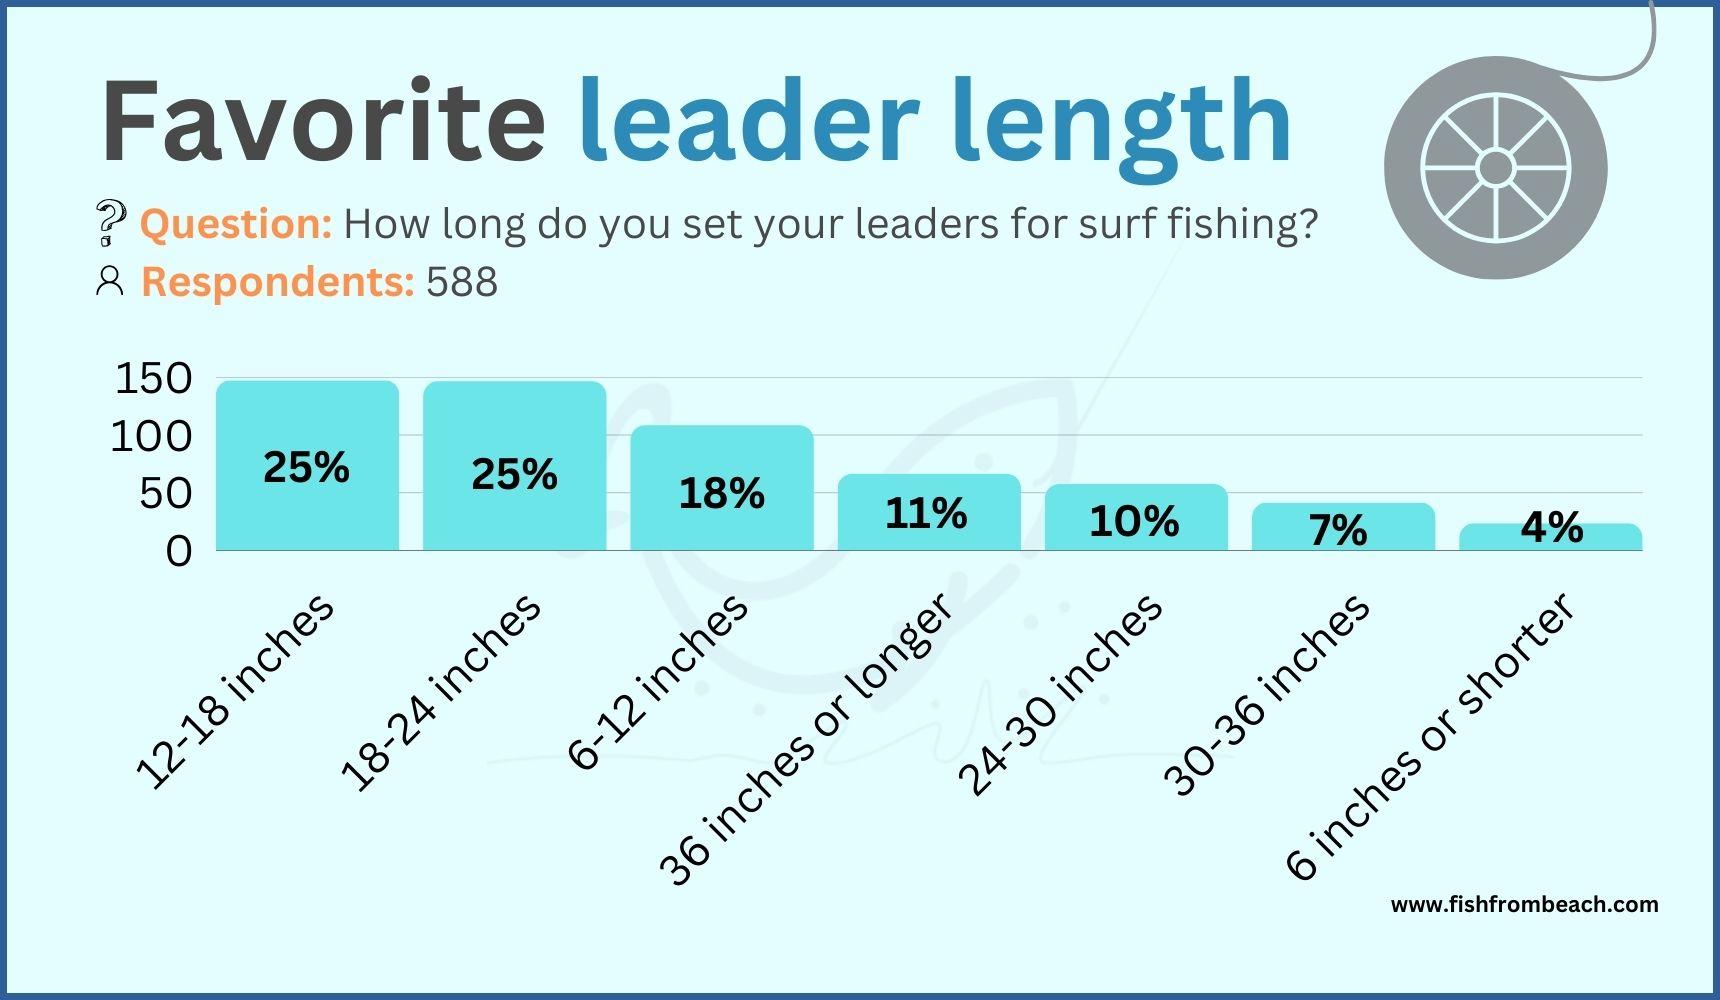 Leader length for surf fishing